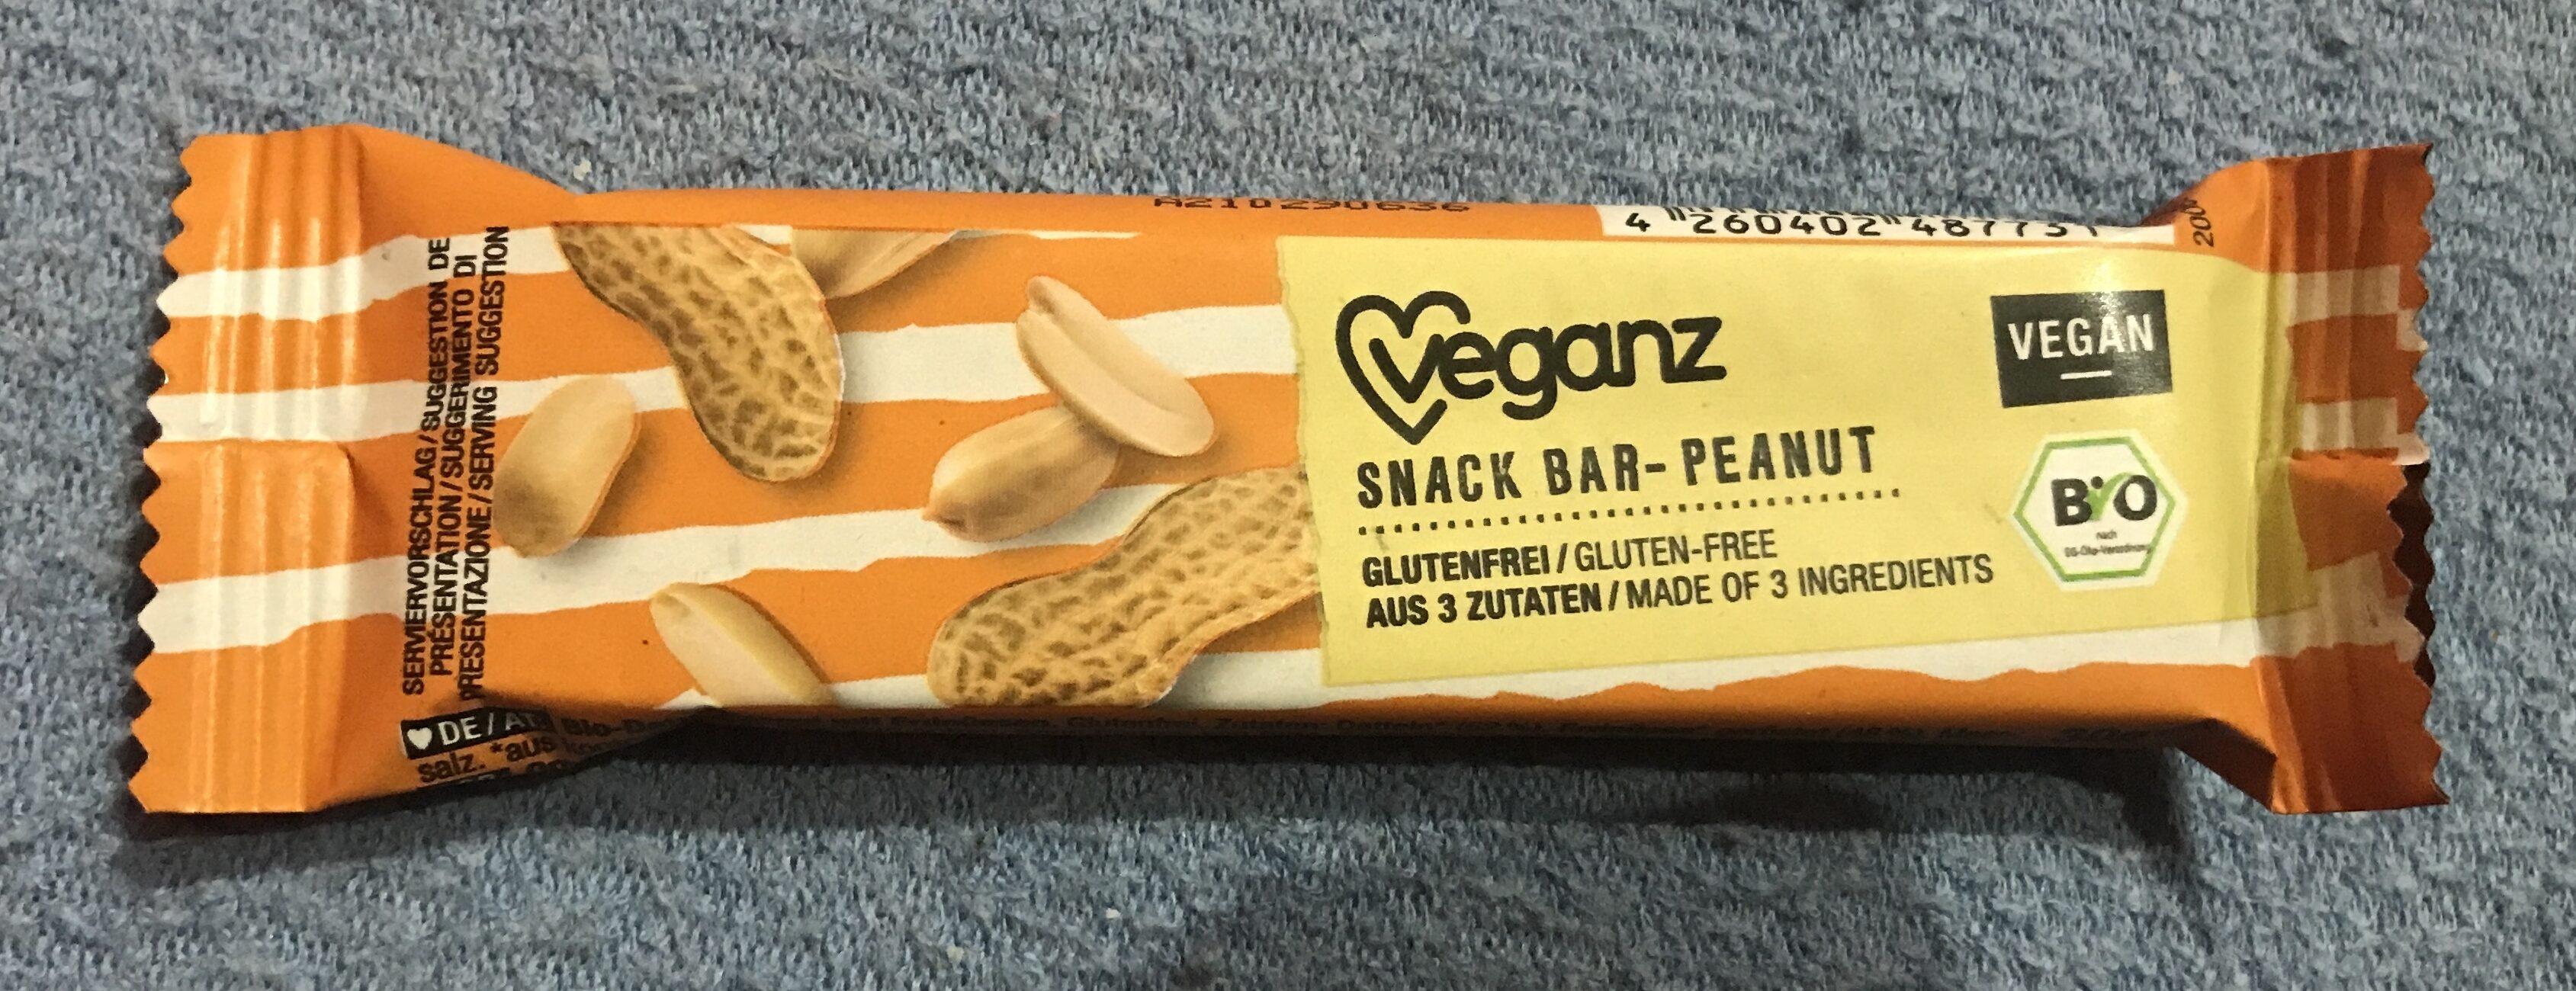 Snack bar Peanut - Produkt